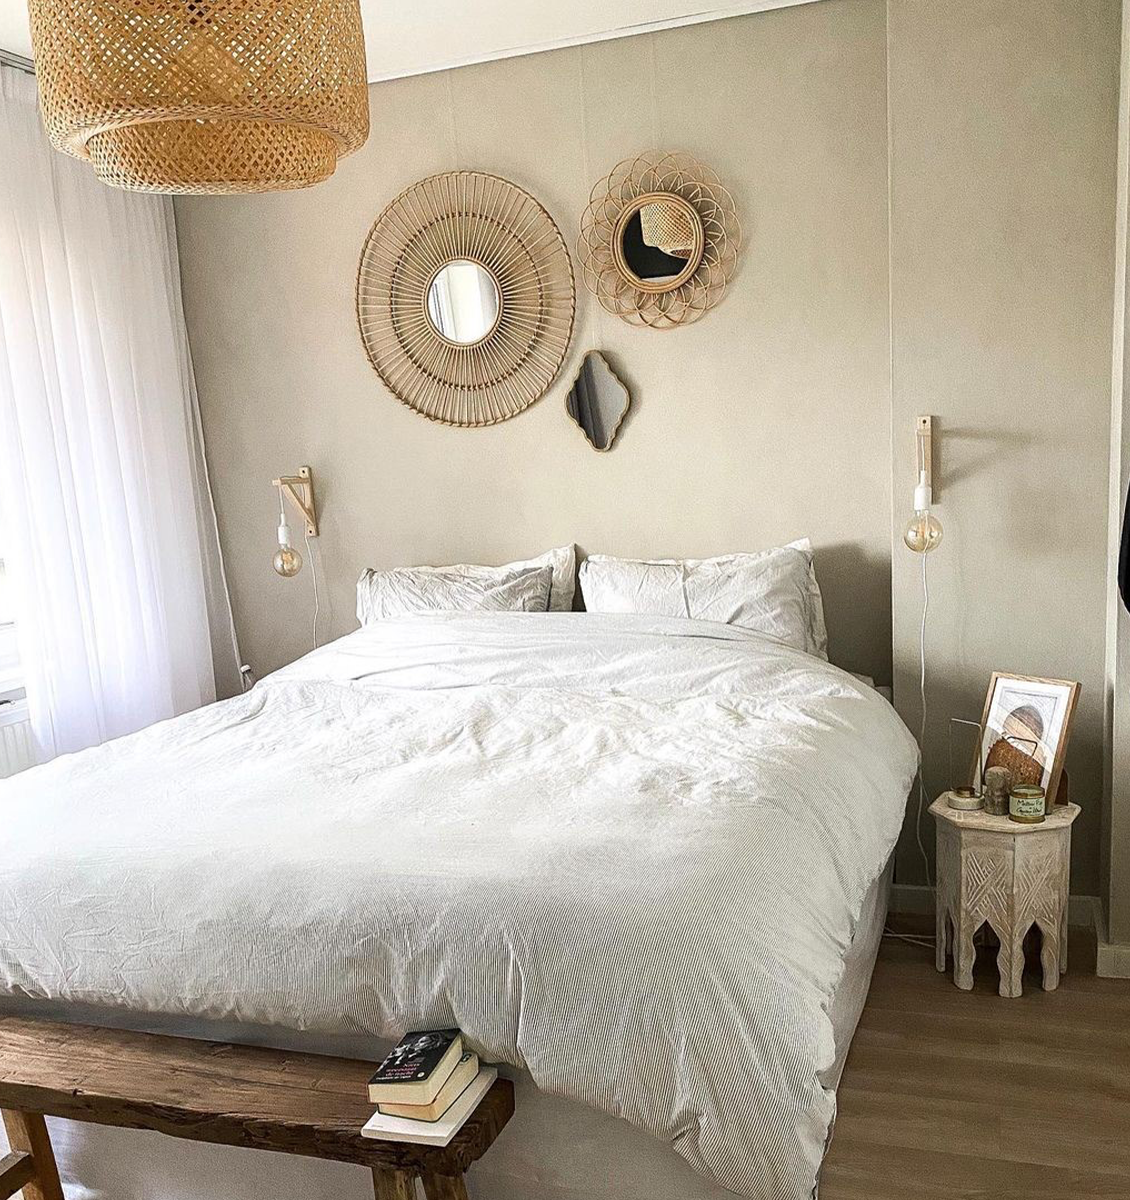 NL slaapkamer met ronde spiegels aan muur